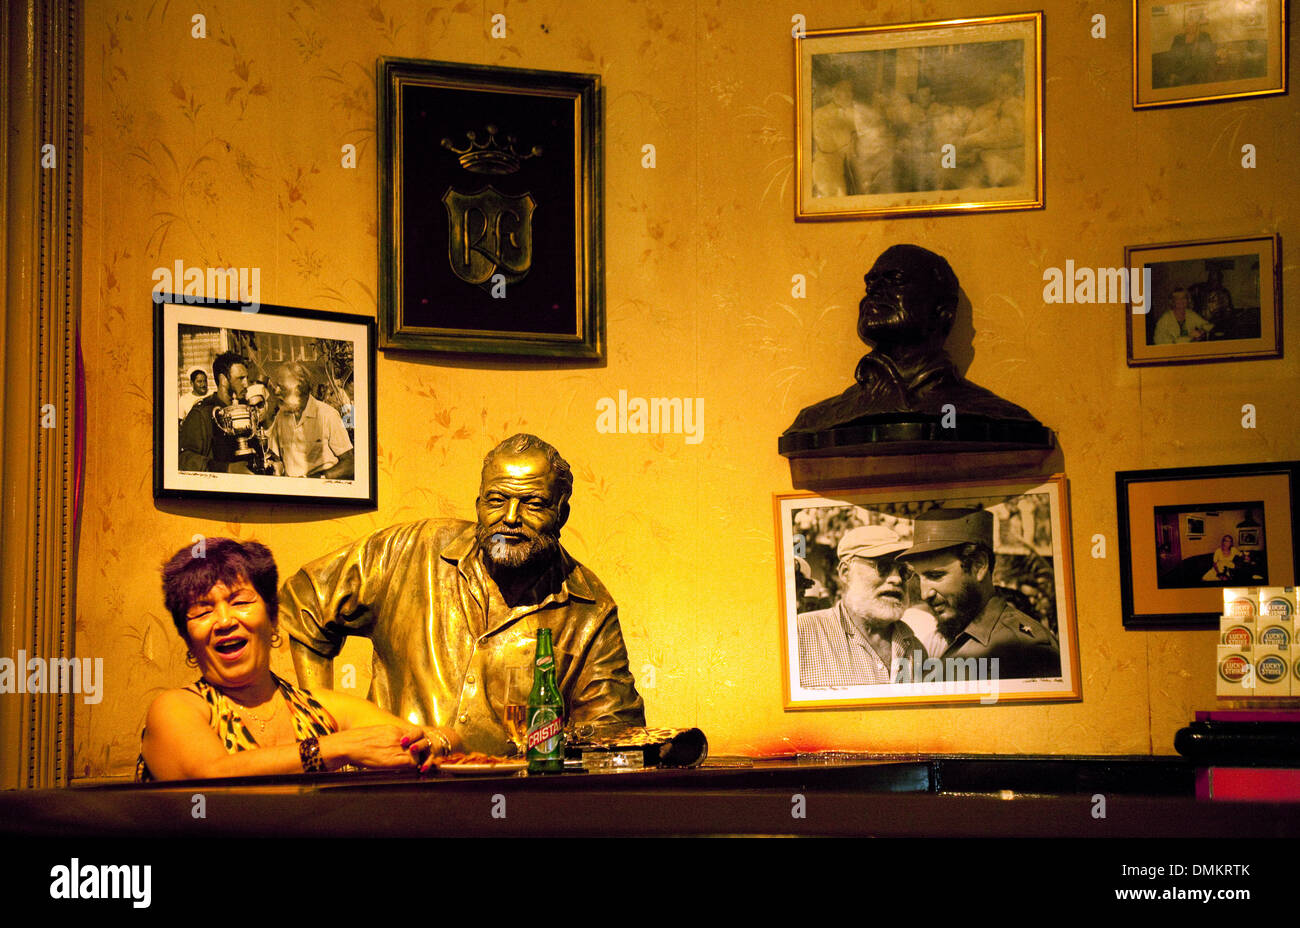 All'interno del bar El Floridita, con la statua di Ernest Hemingway e un patrono locale, l'Avana, Cuba, Caraibi, America Latina Foto Stock